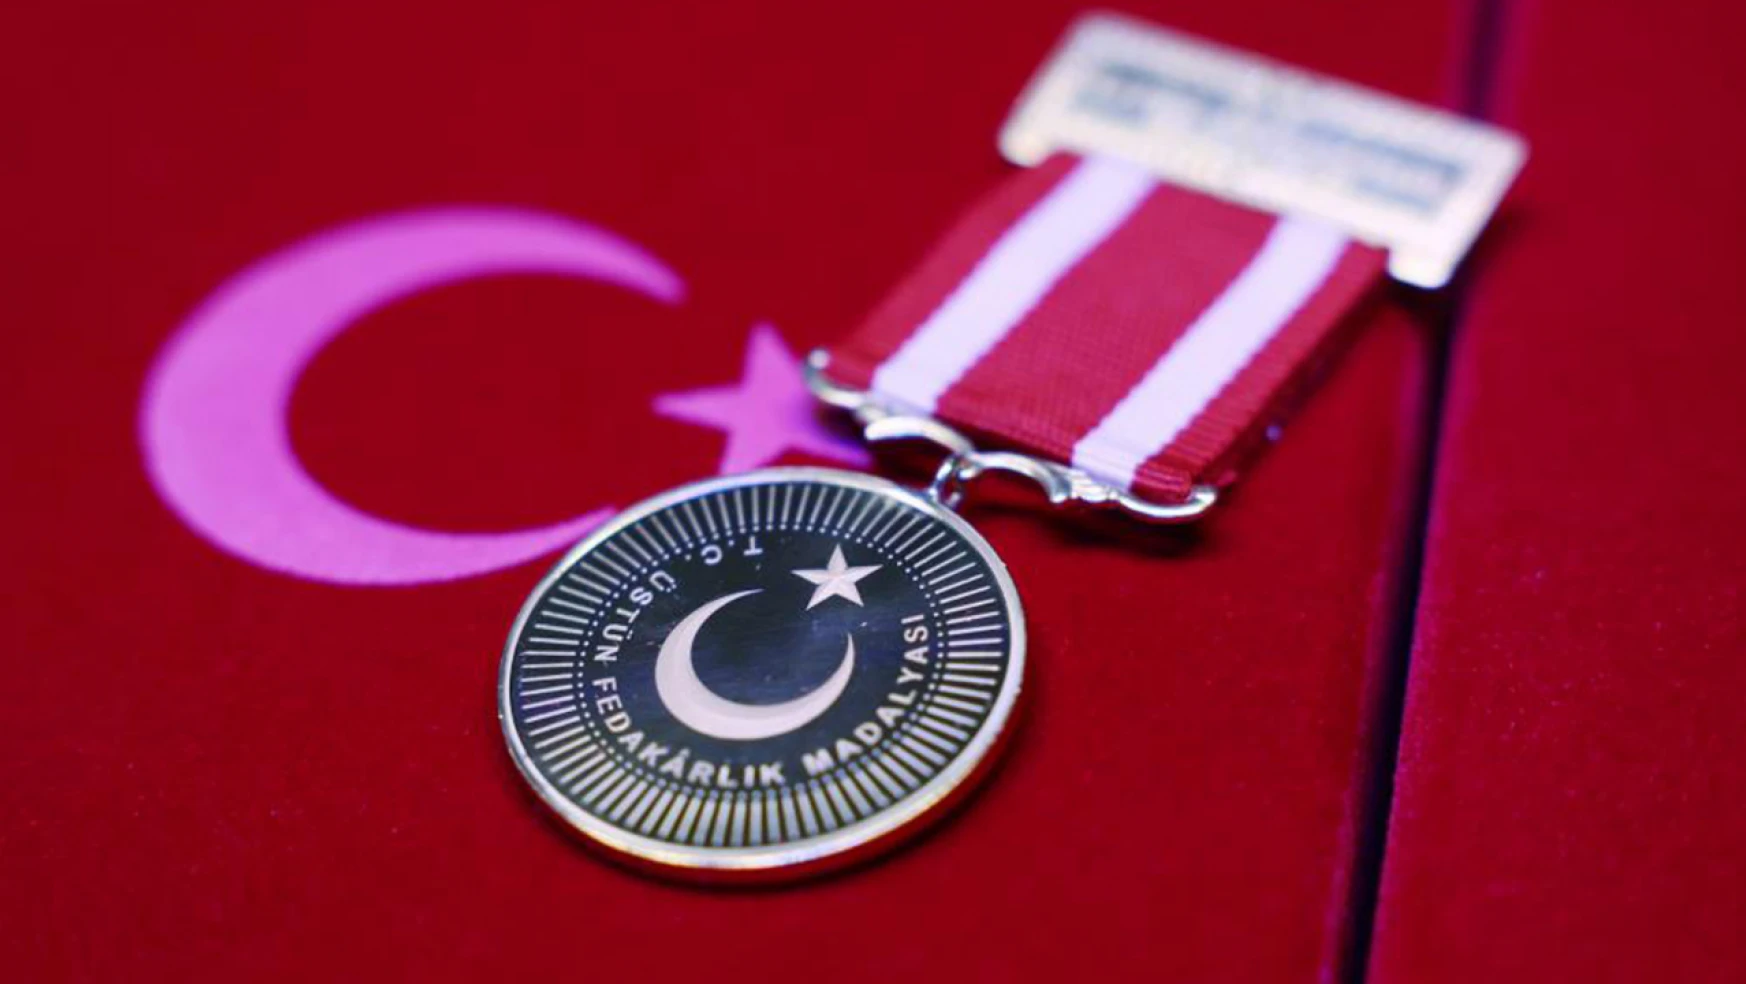 Kastamonu Belediyesi'ne 'üstün fedakarlık' madalyası